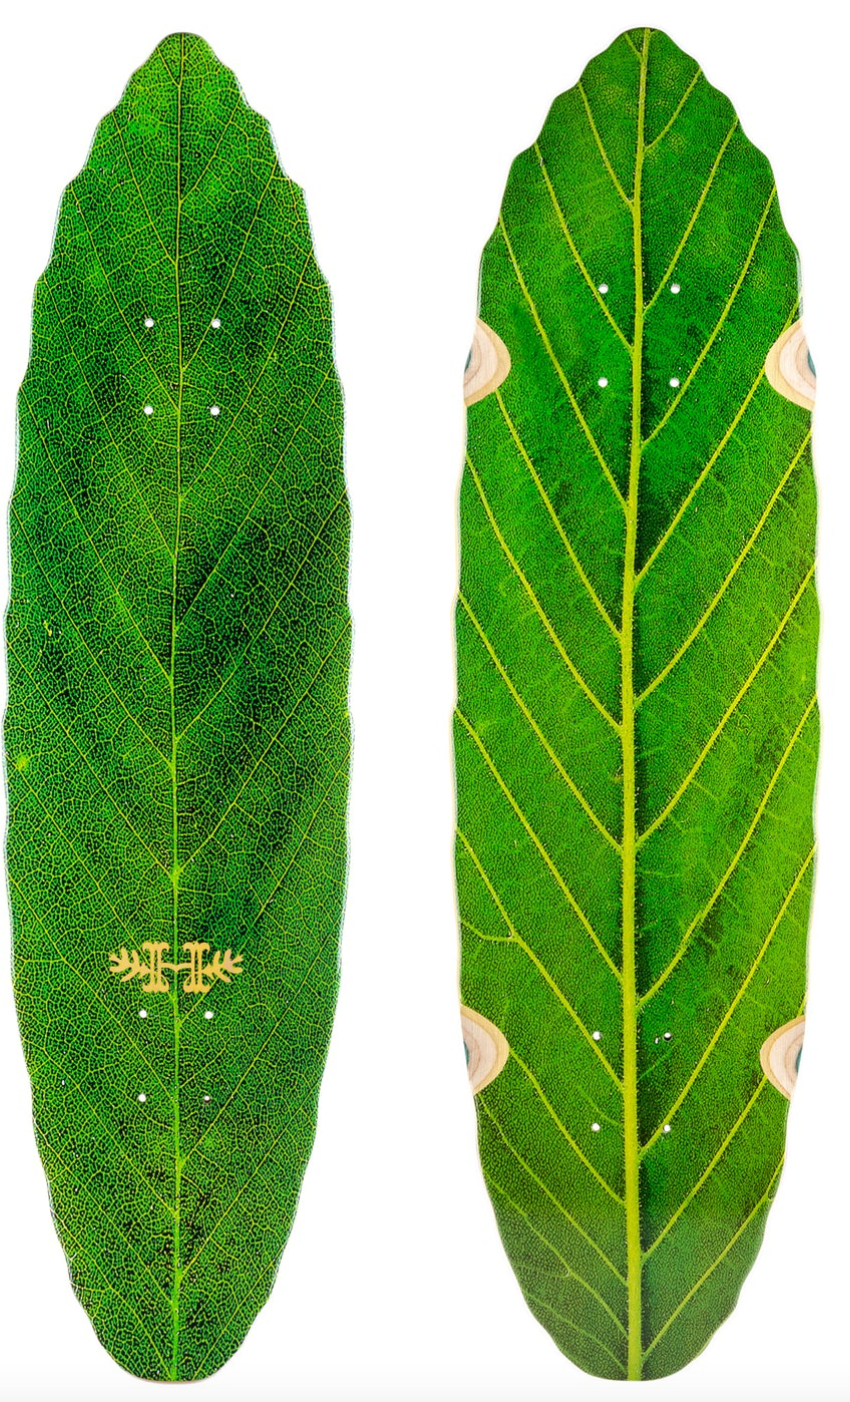 Habitat Leaf Lines Green 8.75 Skateboard Deck